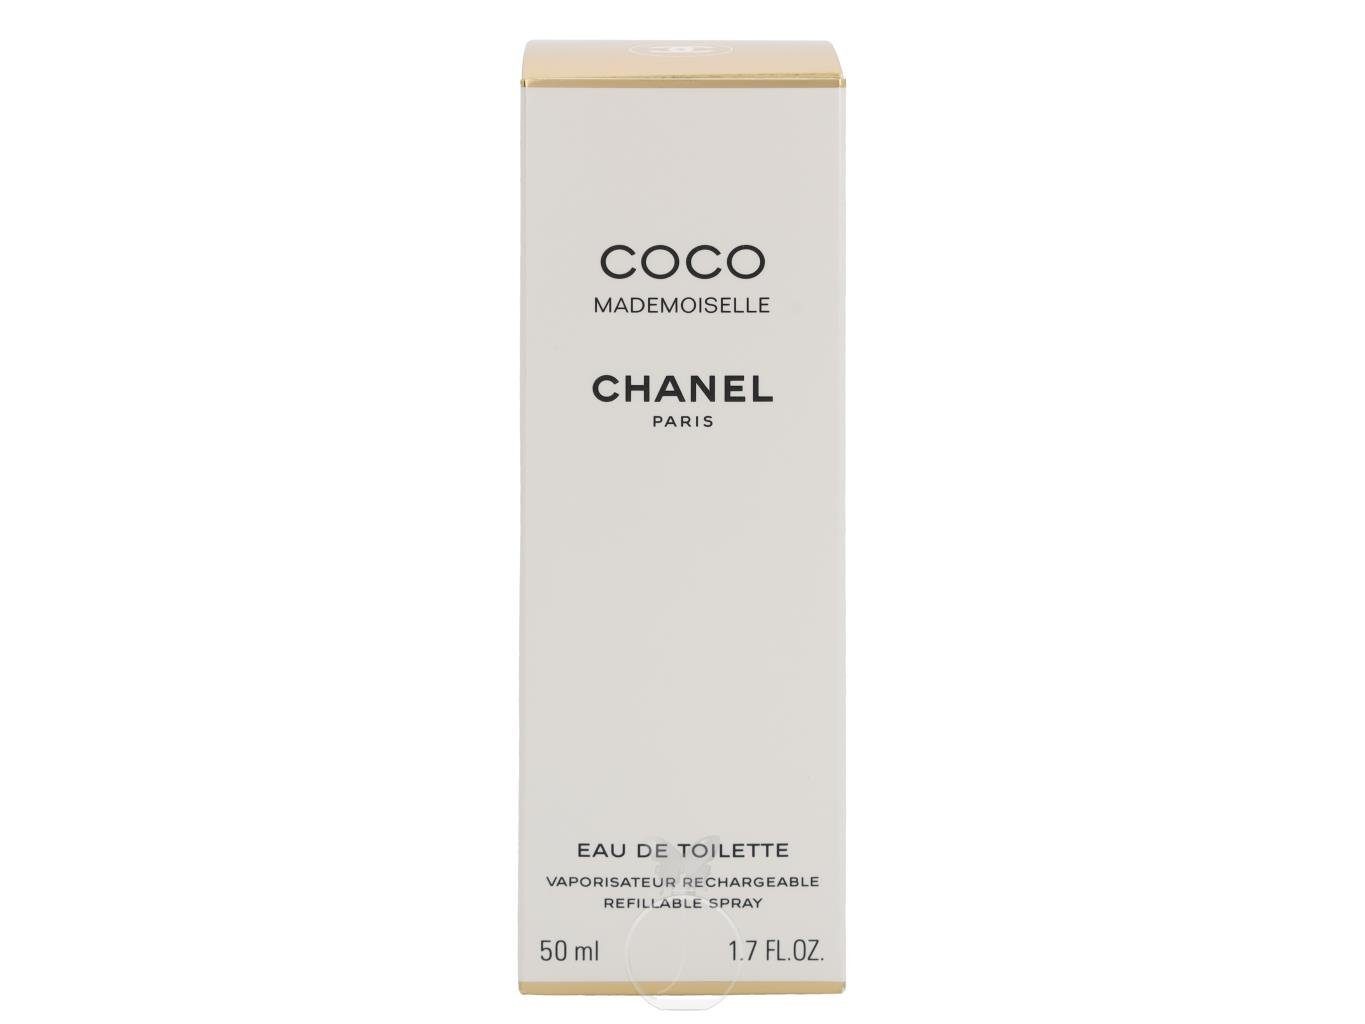 CHANEL Eau de Coco Toilette Chanel Nachfüllbar 50 Toilette ml Mademoiselle Eau de